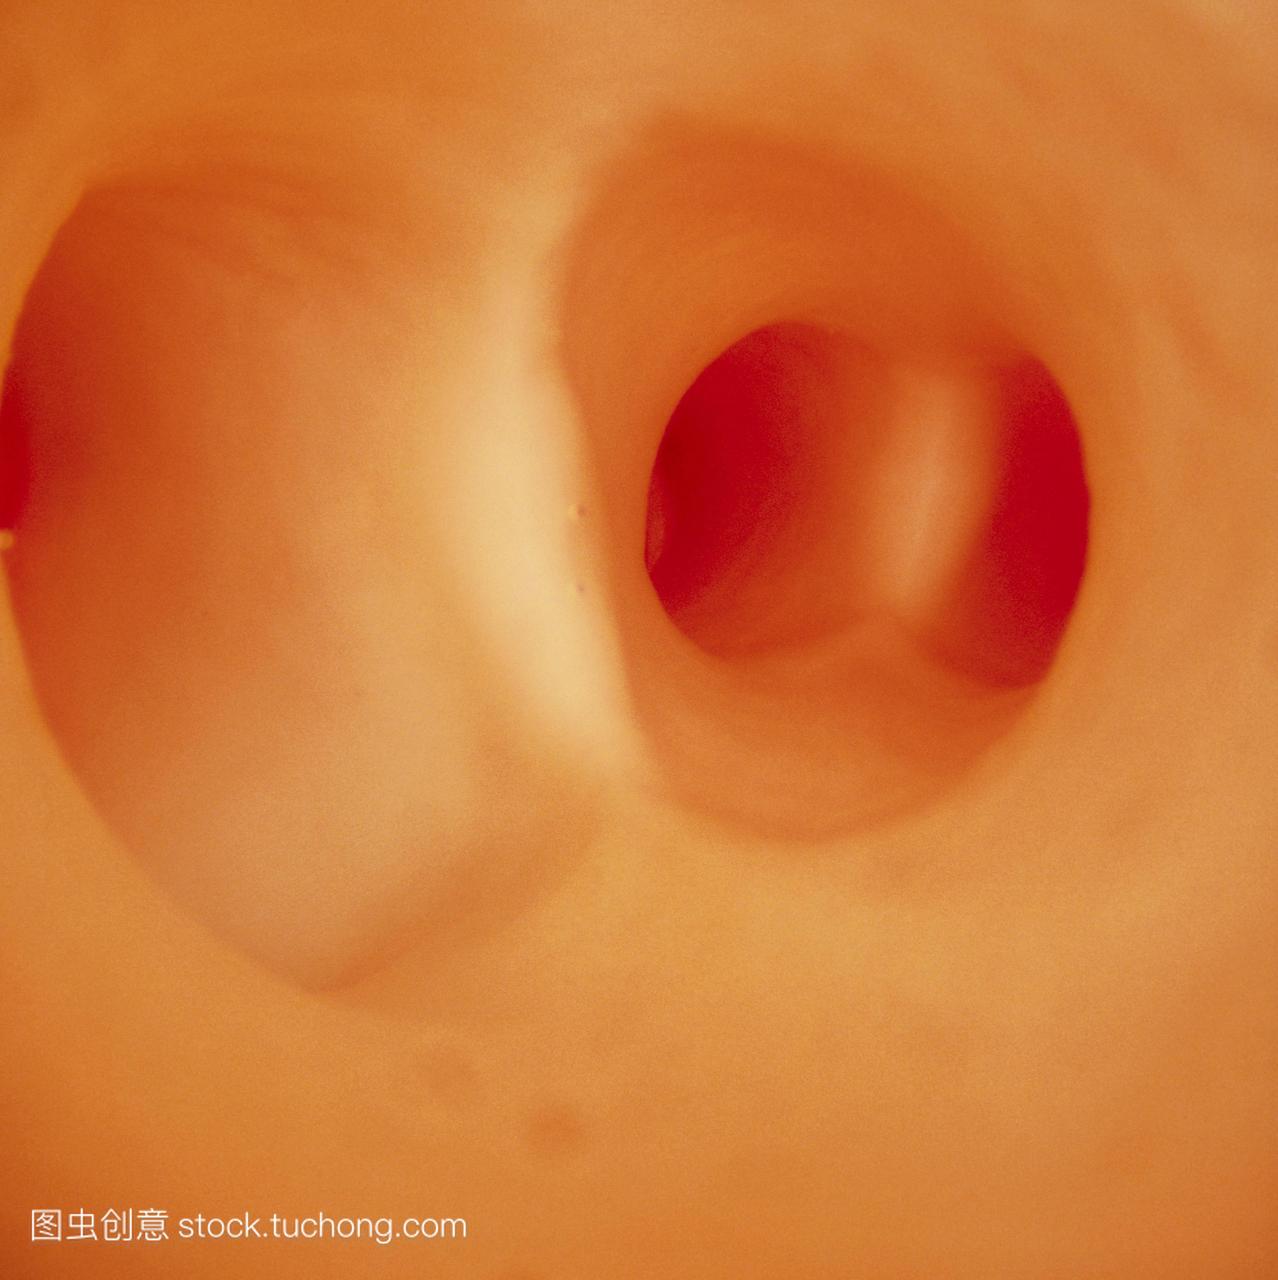 内窥镜图像显示人体动脉内壁腔的出现。两个主